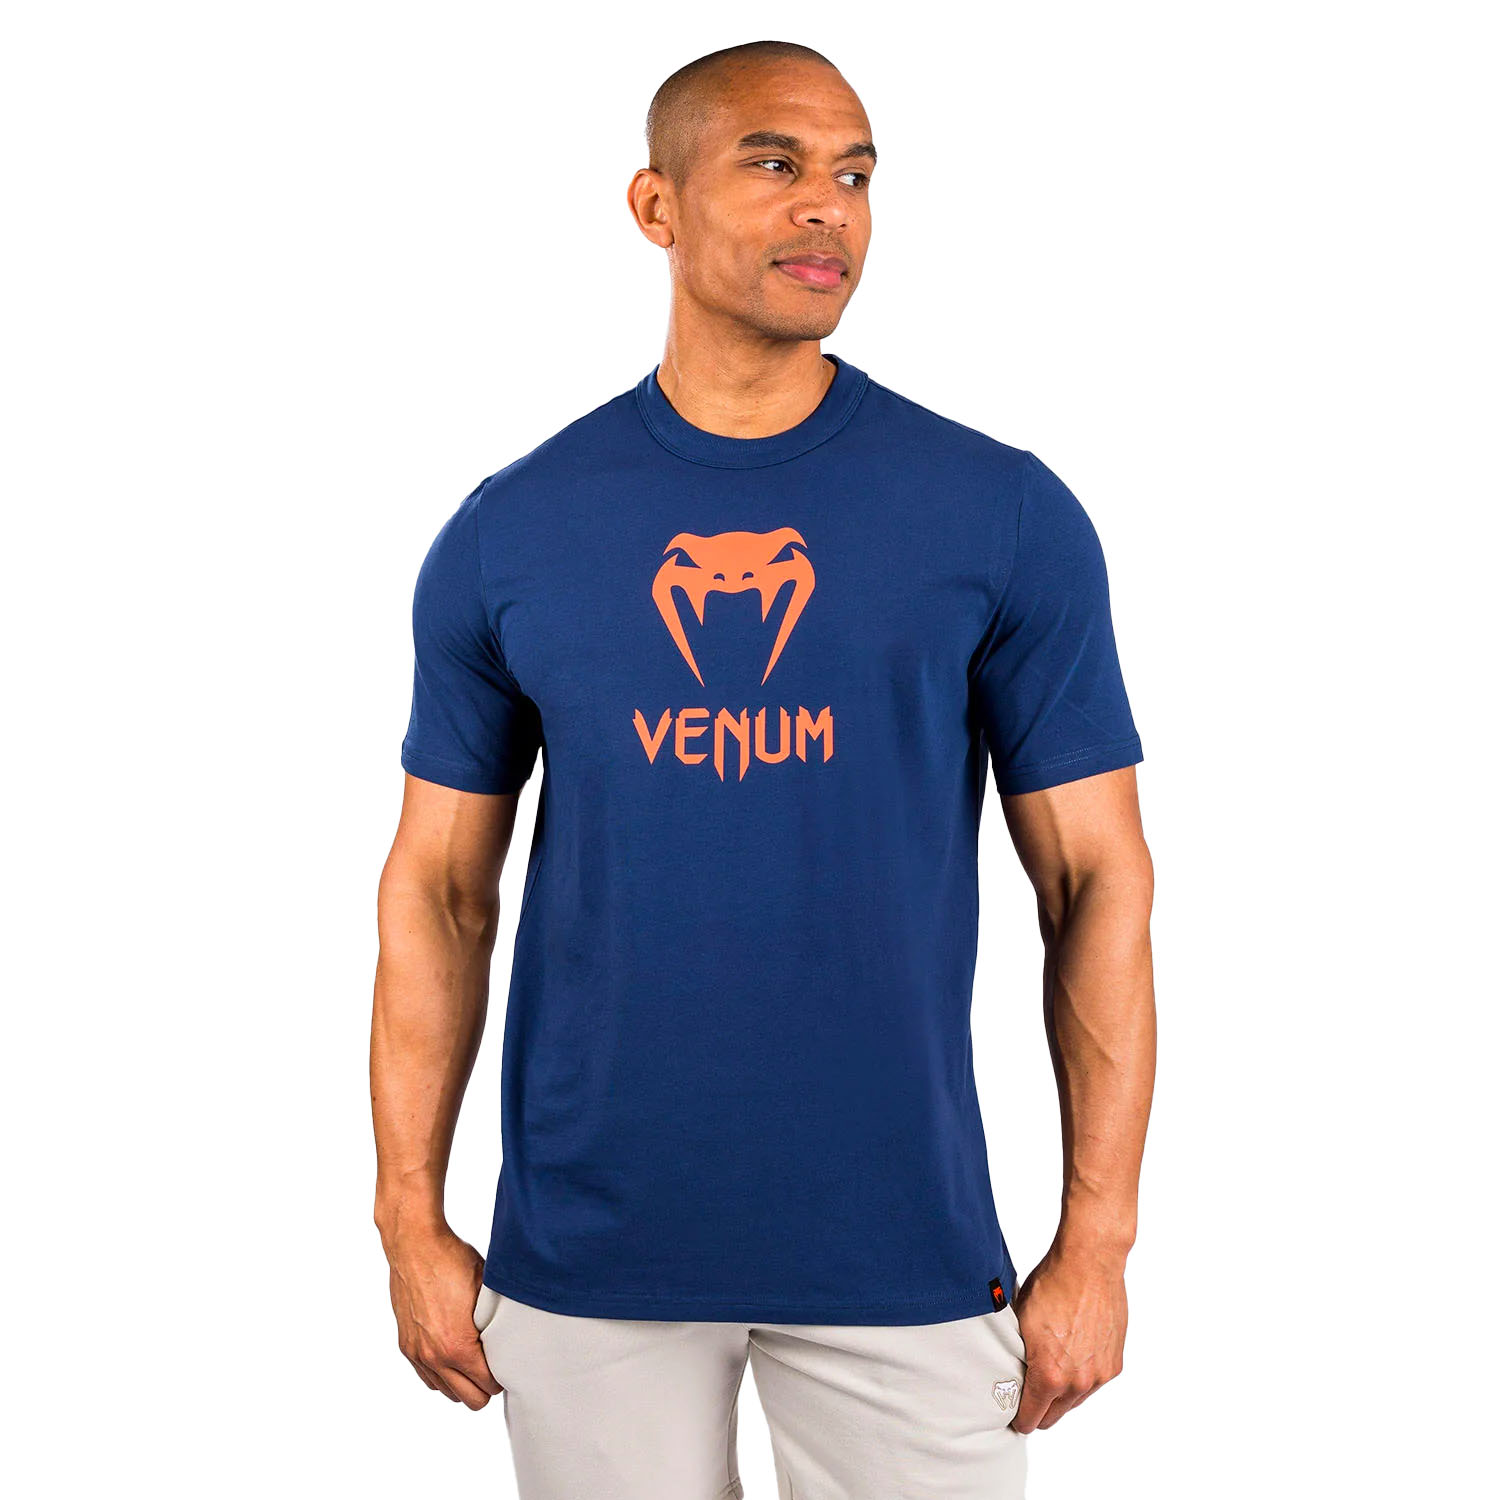 VENUM T-Shirt, Classic, navy-orange, L